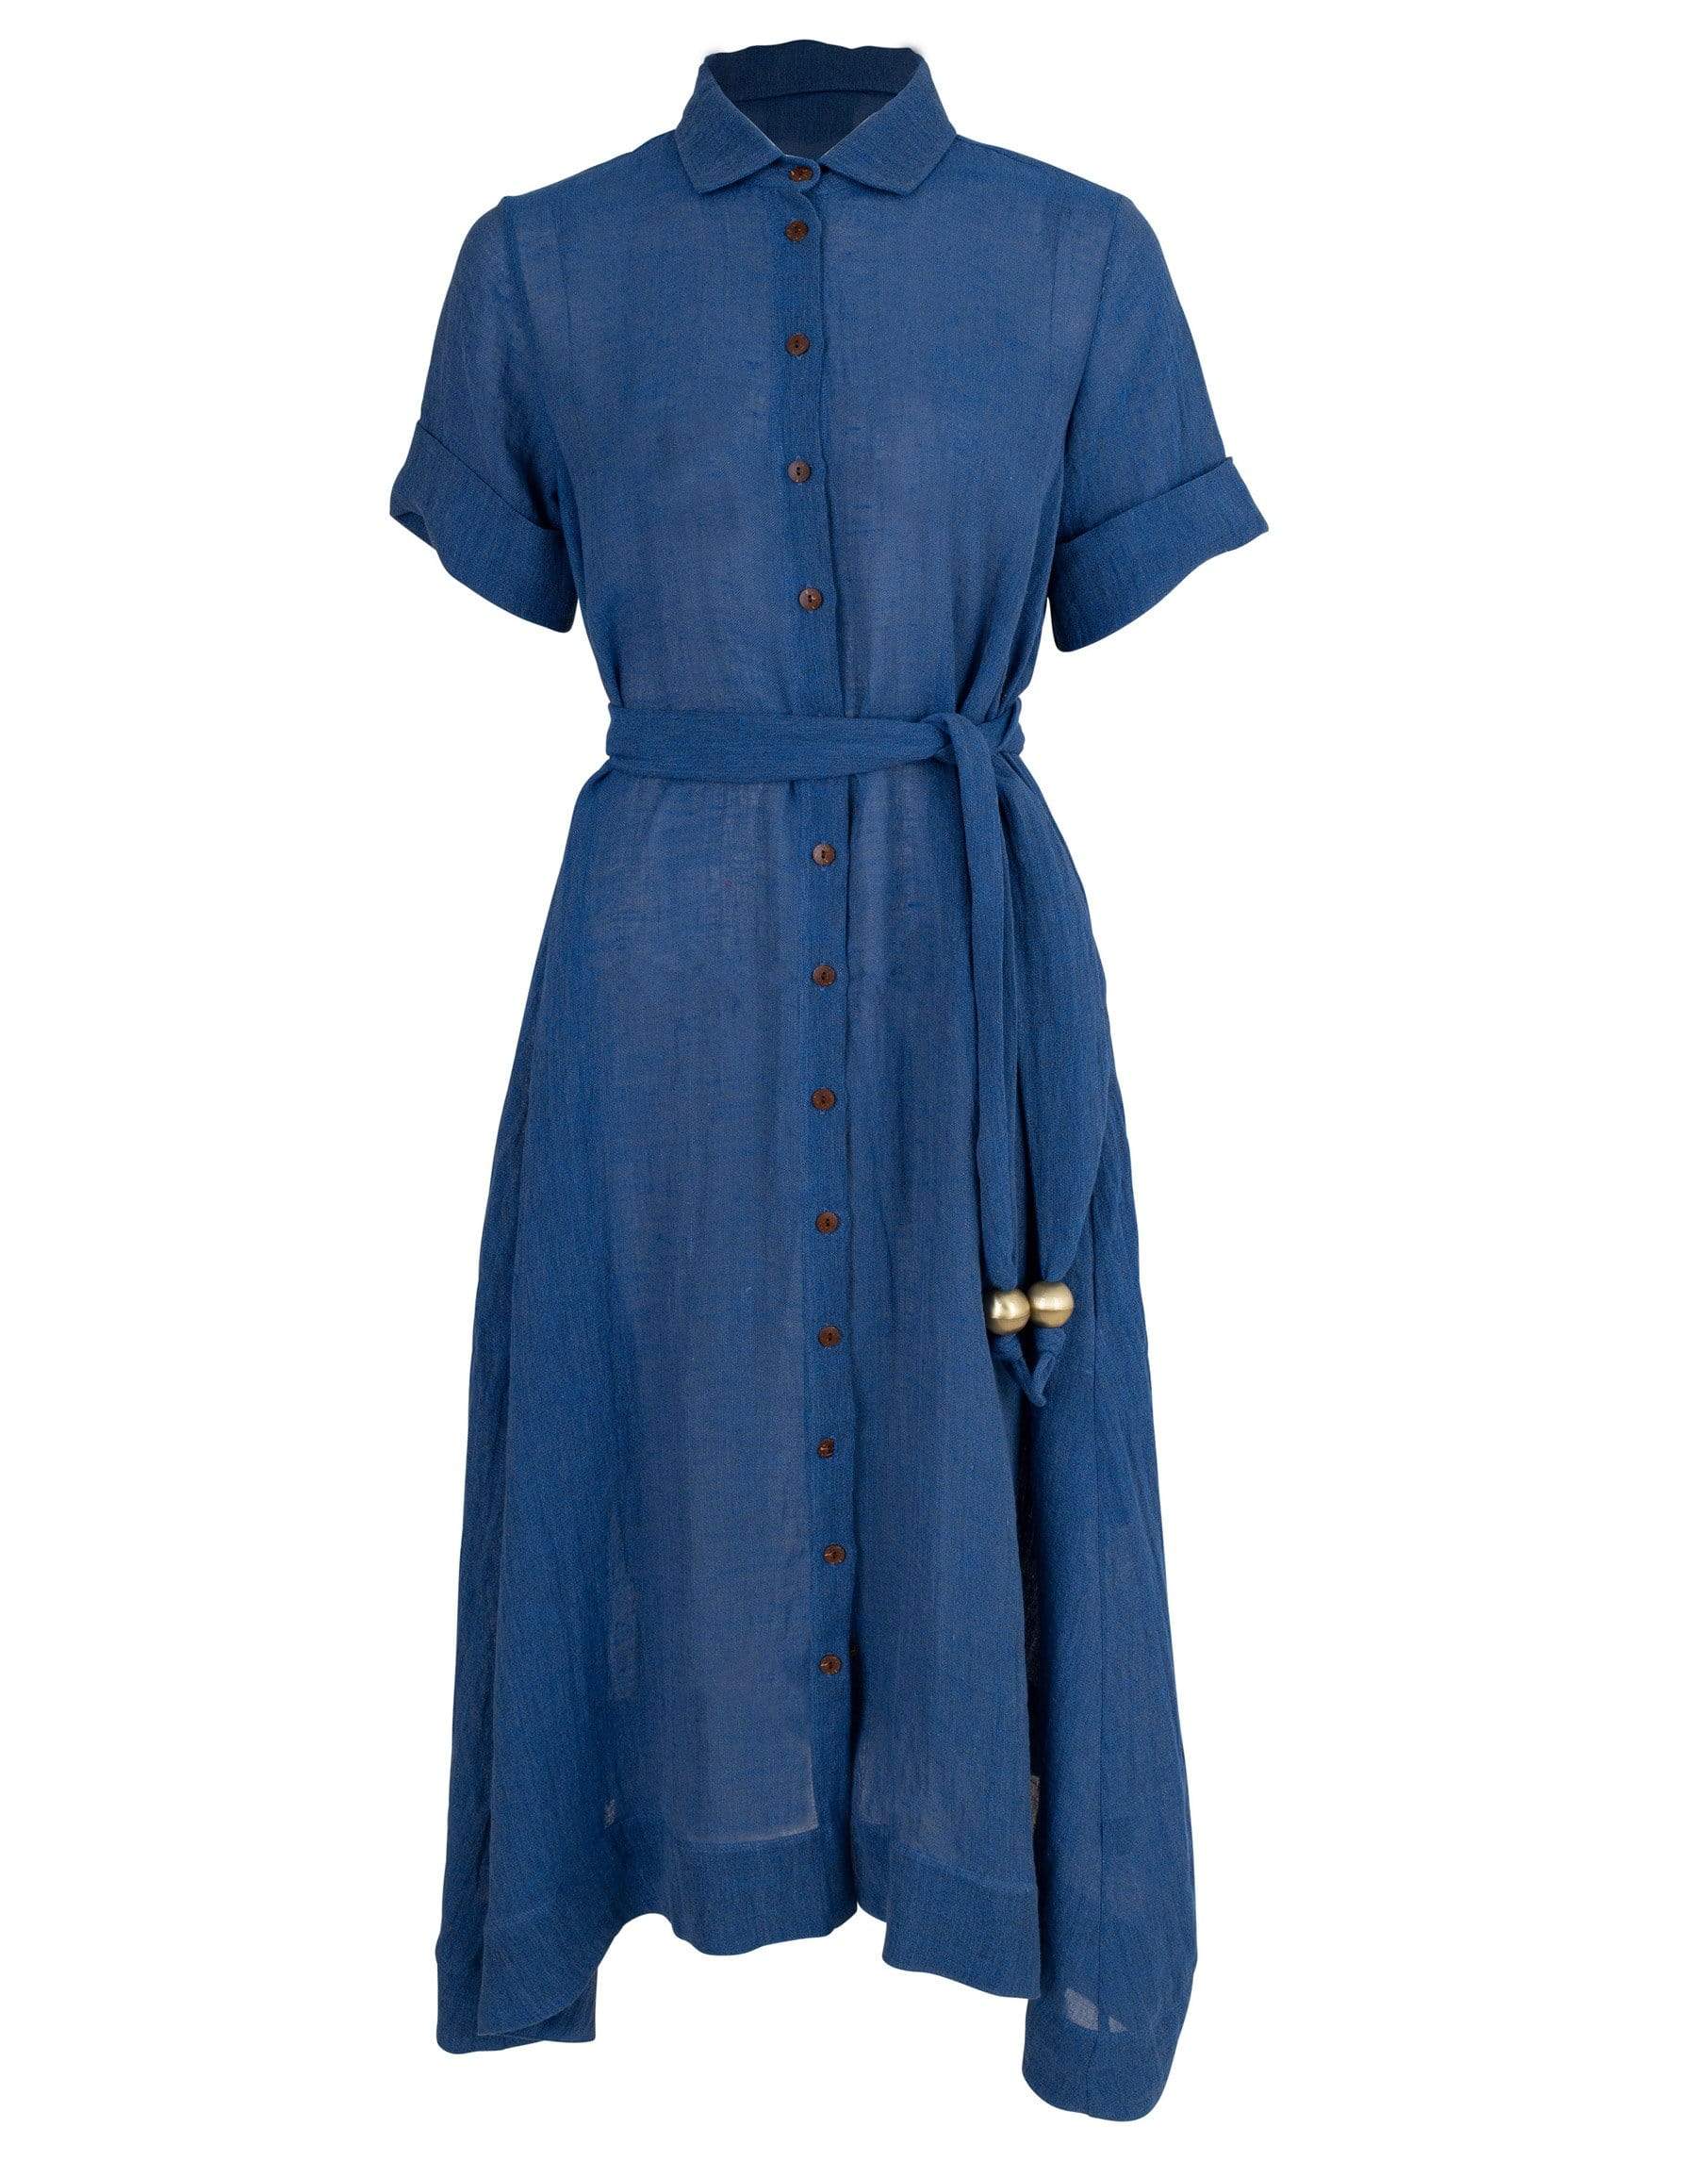 LISA MARIE FERNANDEZ-Moroccan Blue Shirt Dress-